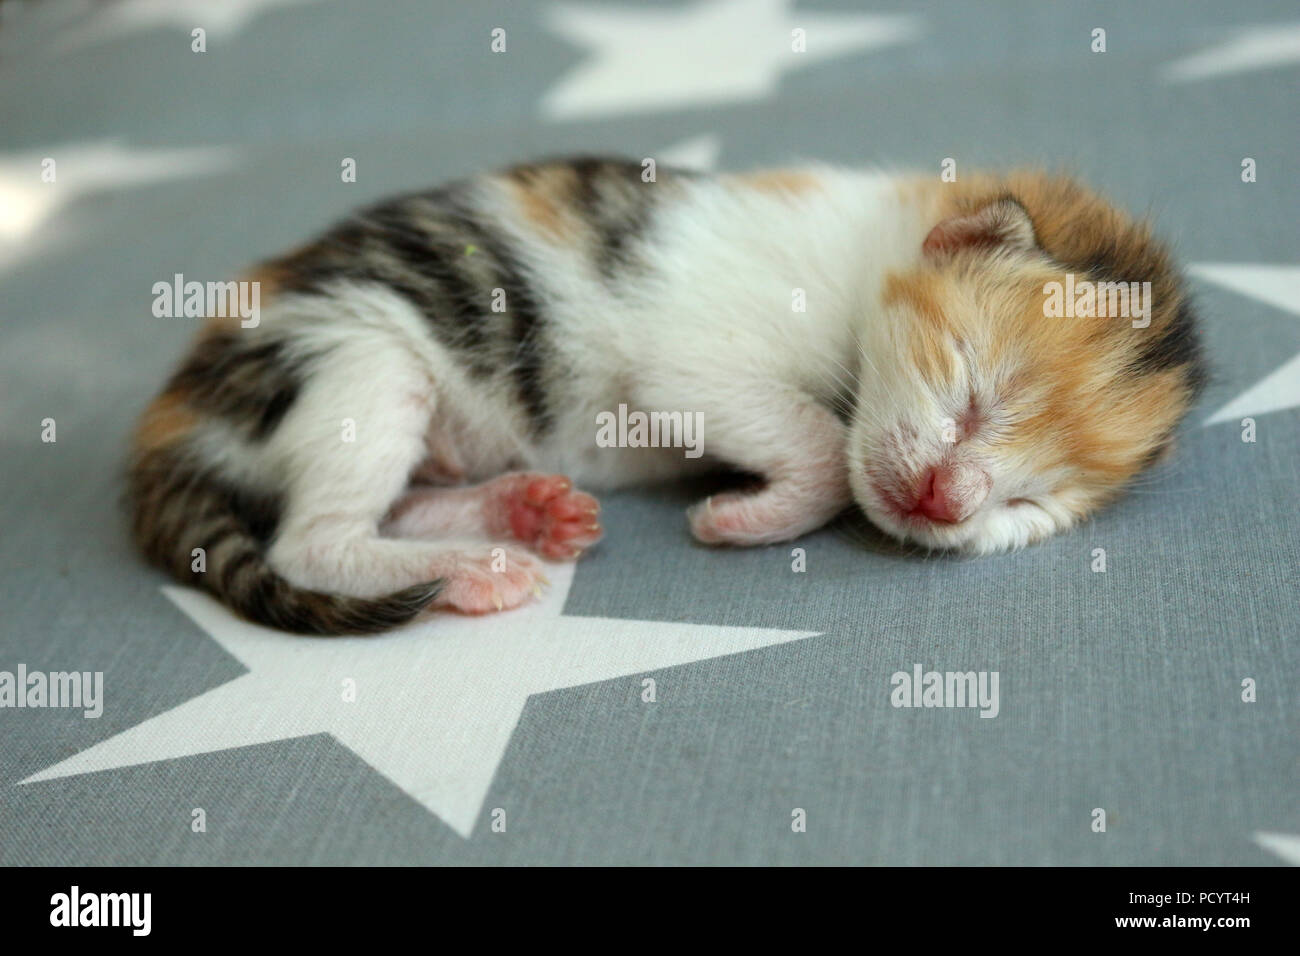 Gattino neonato, 6 giorni, sdraiato su un tappeto Foto Stock